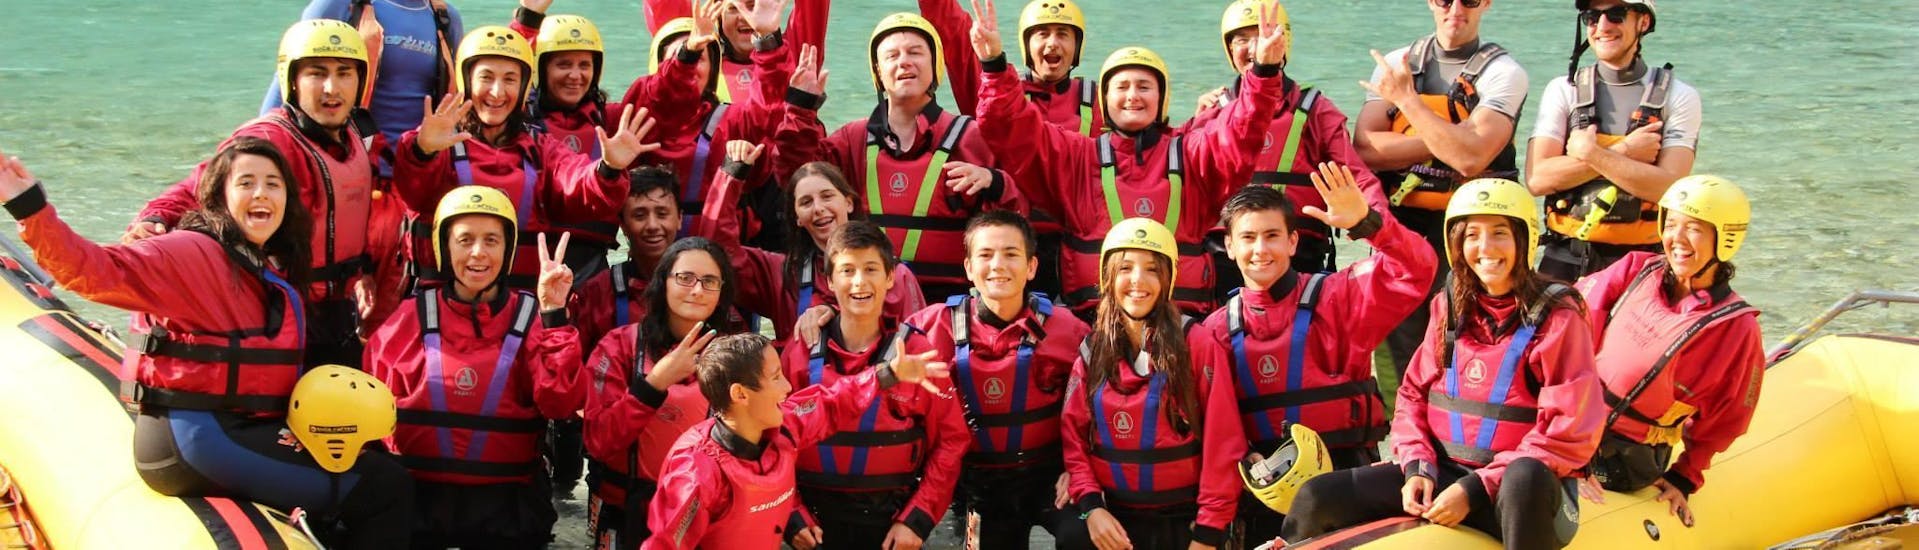 Rafting en el río Soča para grupos (a partir de 10 personas).